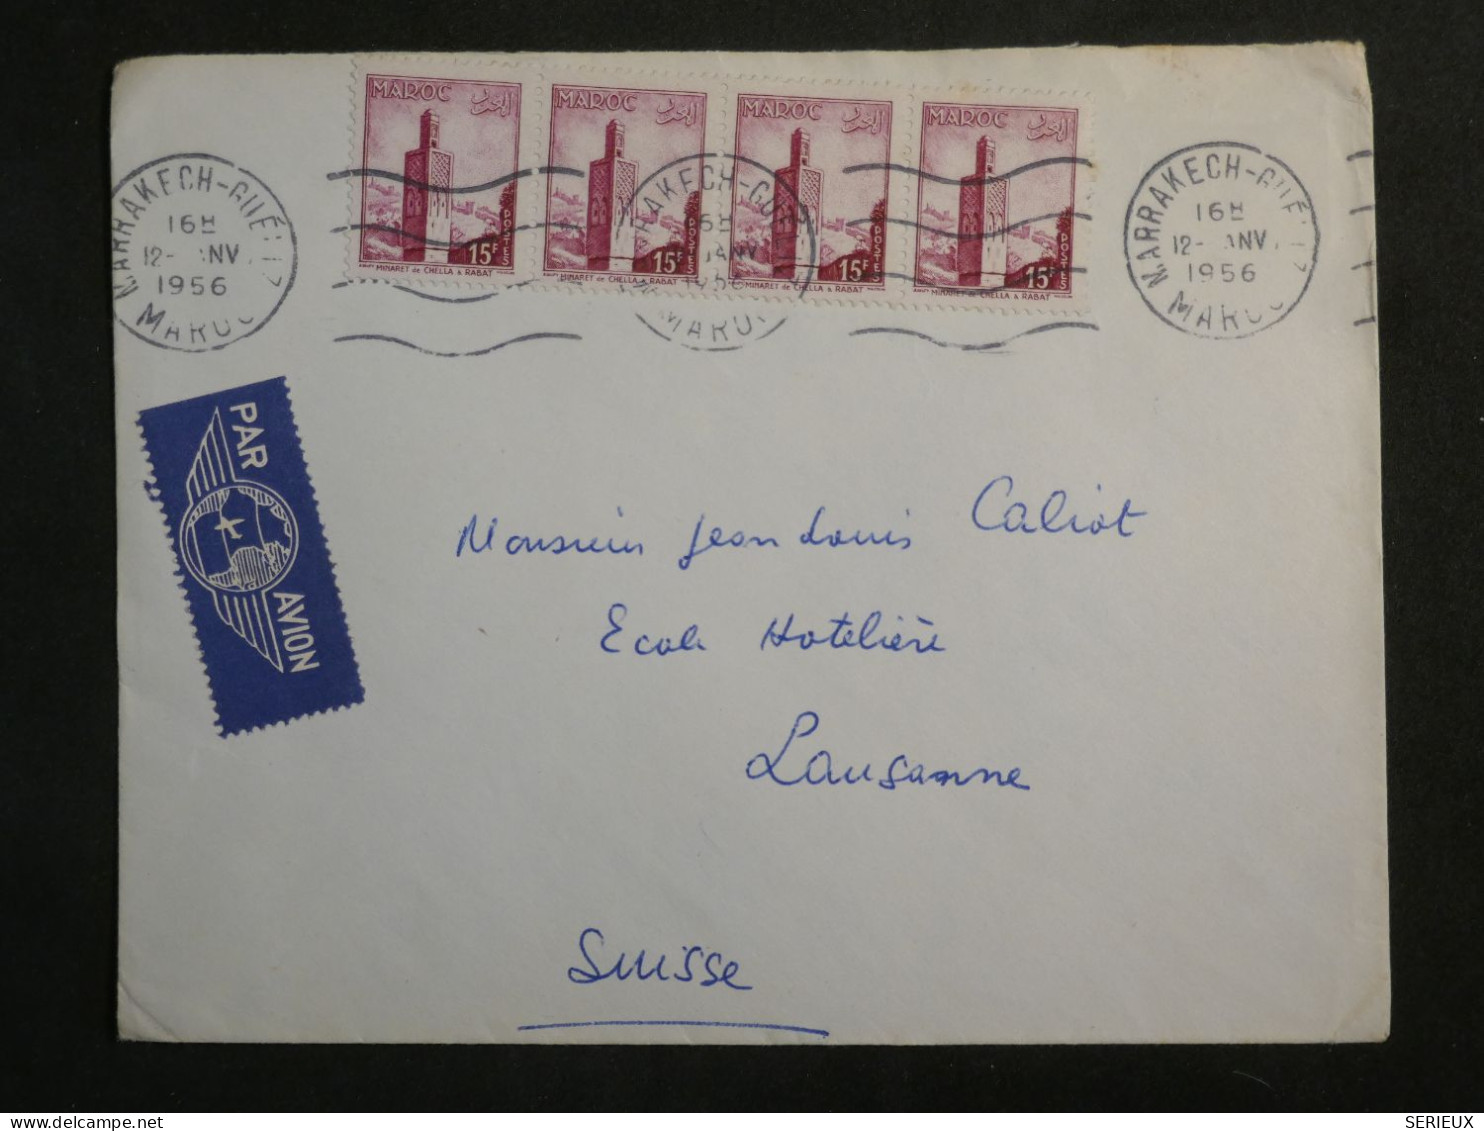 DL0  MAROC  BELLE LETTRE  1956  MARRAKESH A LAUSANNE SUISSE  + +AFF.  INTERESSANT+ + - Covers & Documents